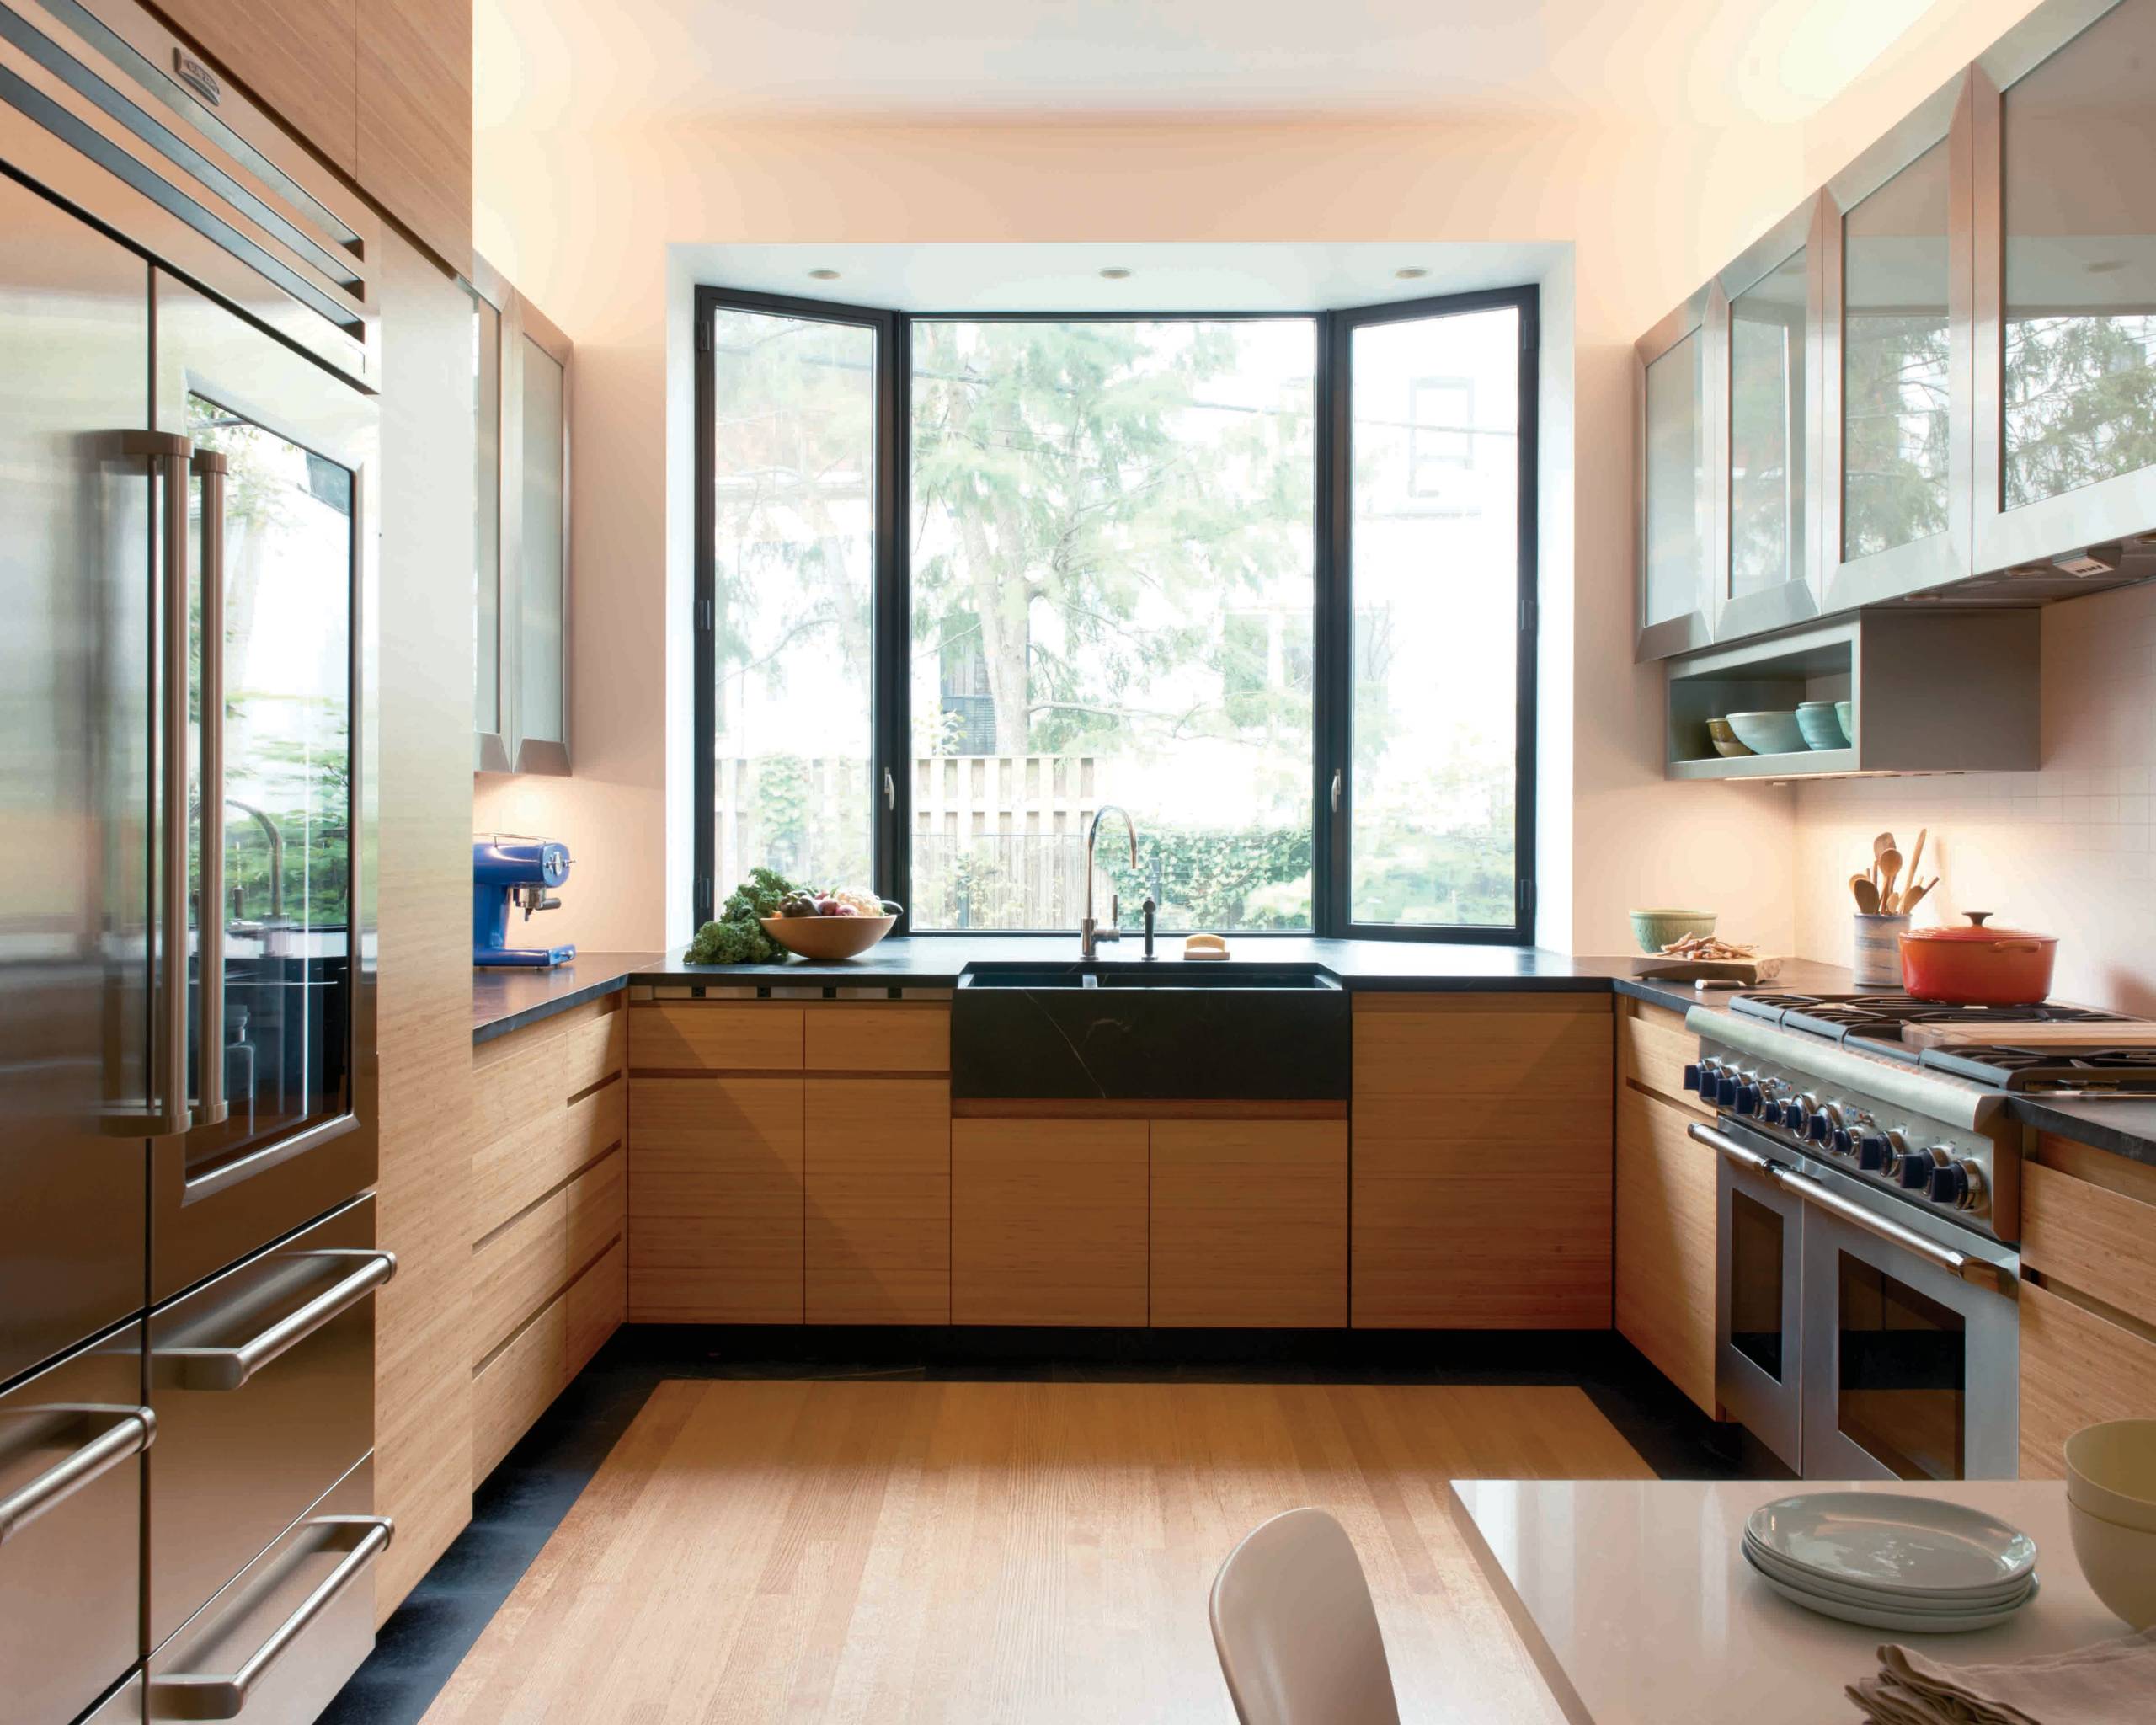 Кухня мойка у окна дизайн. Проект кухни с окном. Кухонный гарнитур с окном. Планировка кухни с большим окном. Кухня с панорамными окнами.